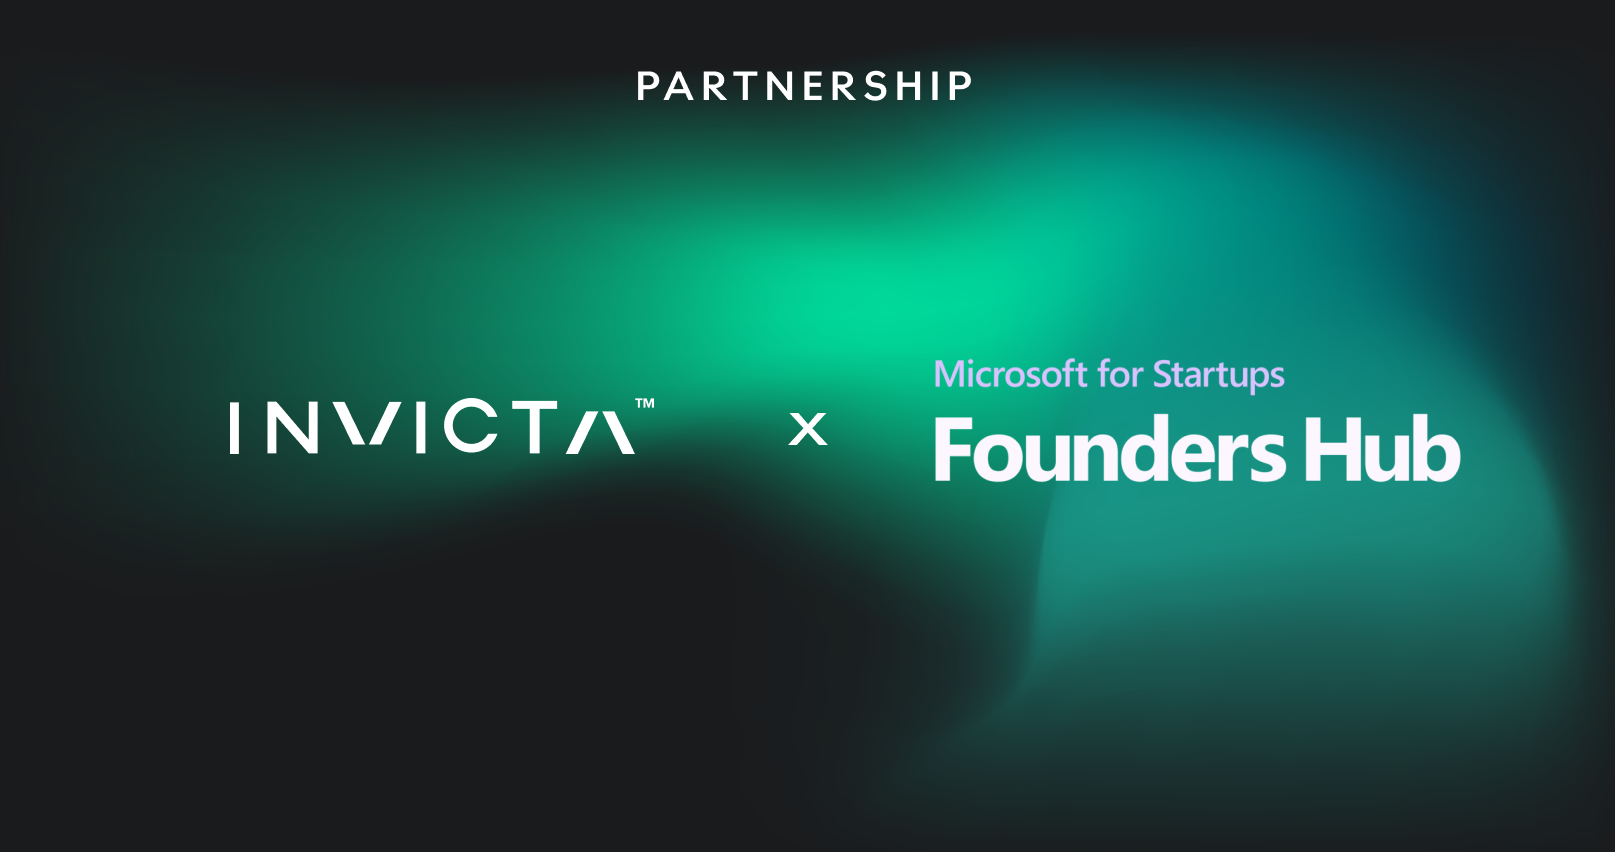 Invicta AI X Microsoft for Startups